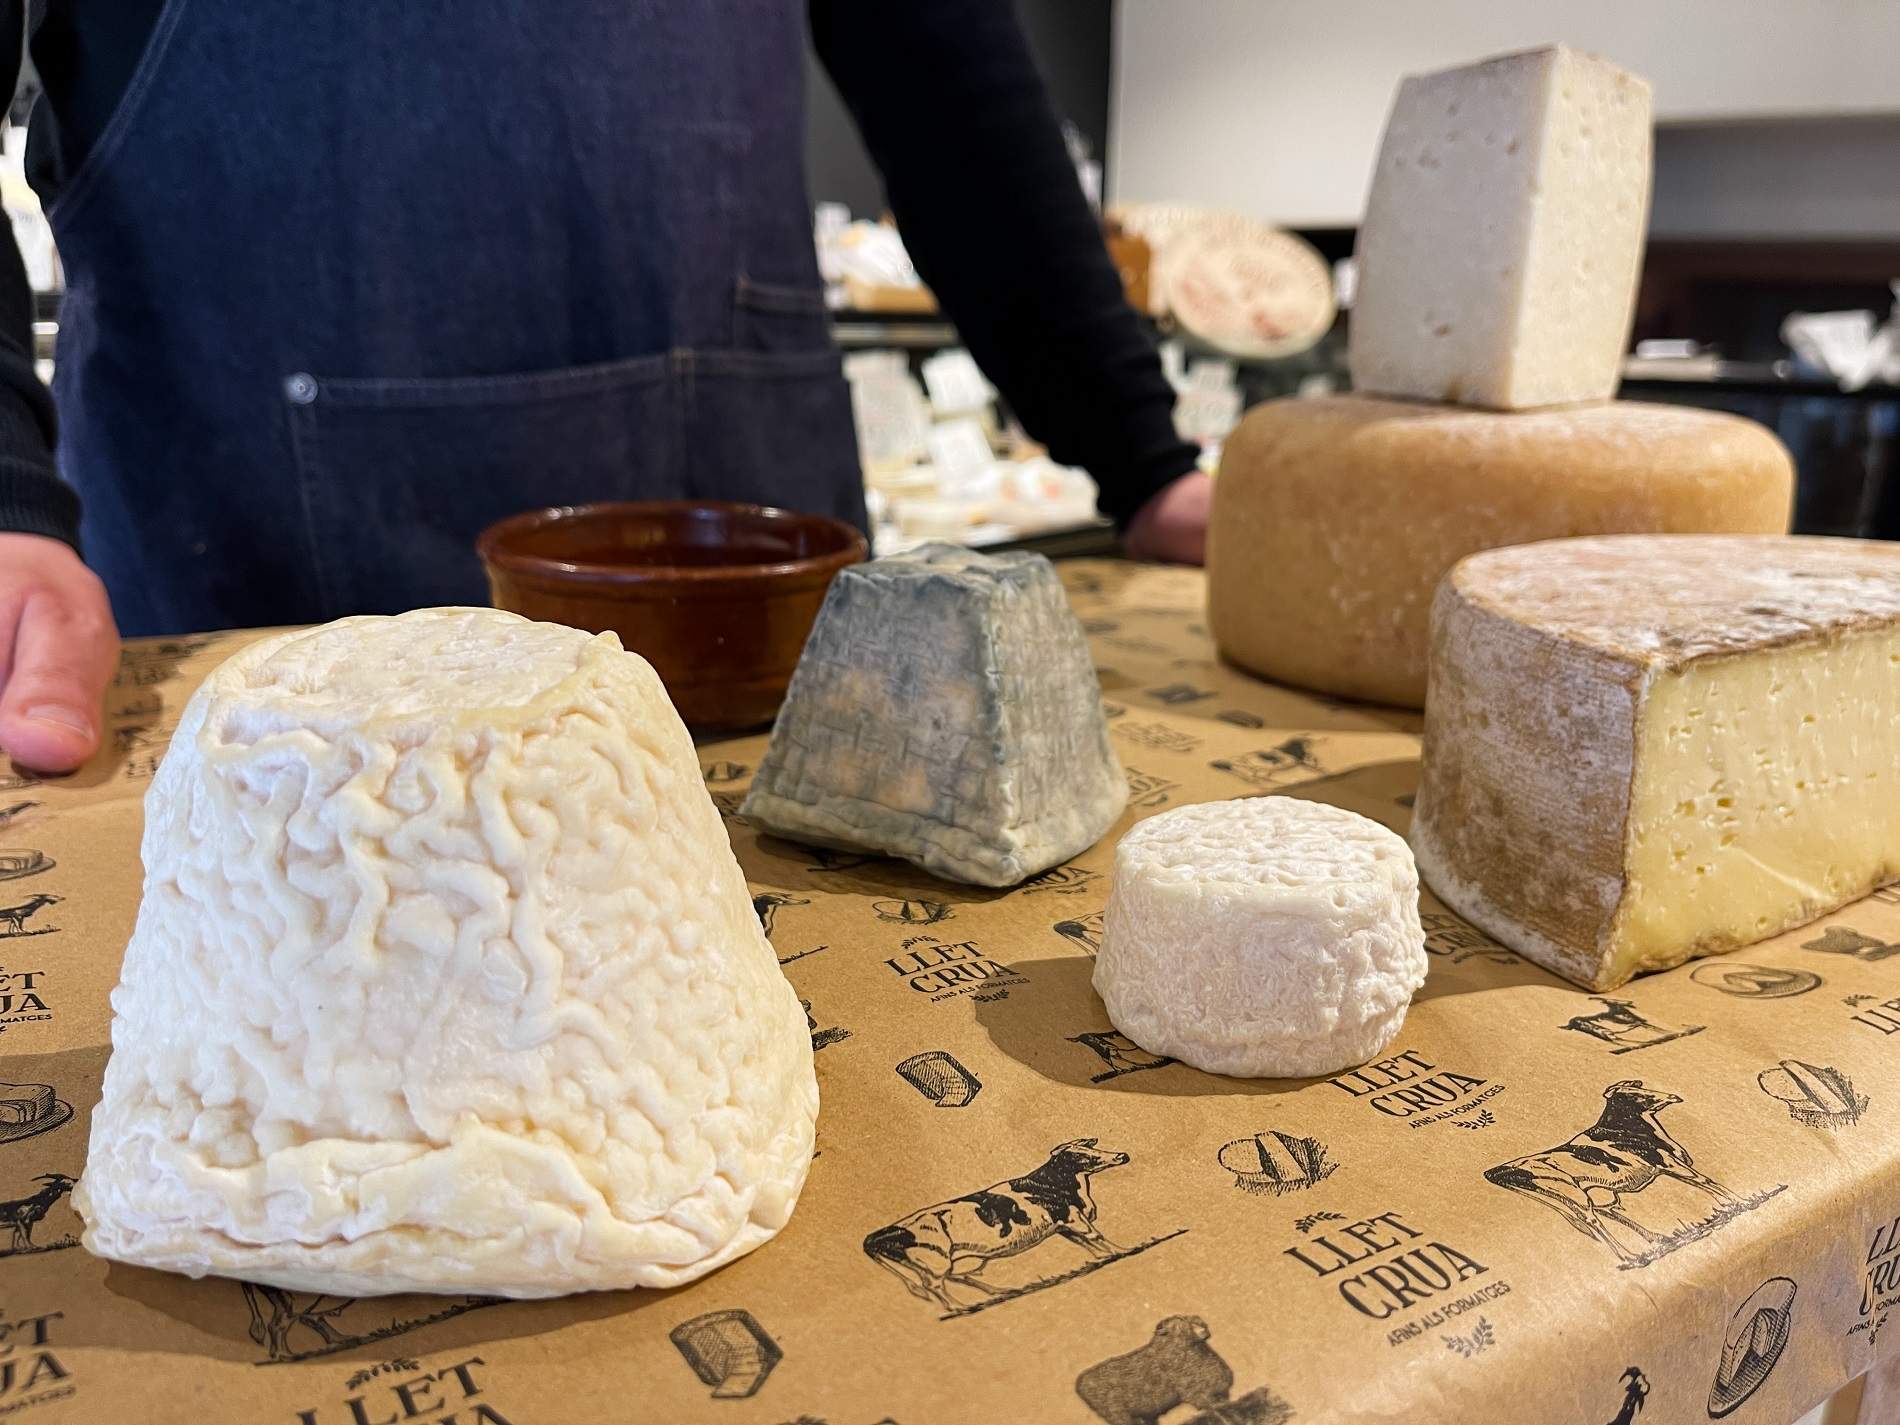 Com vam començar a menjar formatge fa 7.500 anys? El misteri revelat!